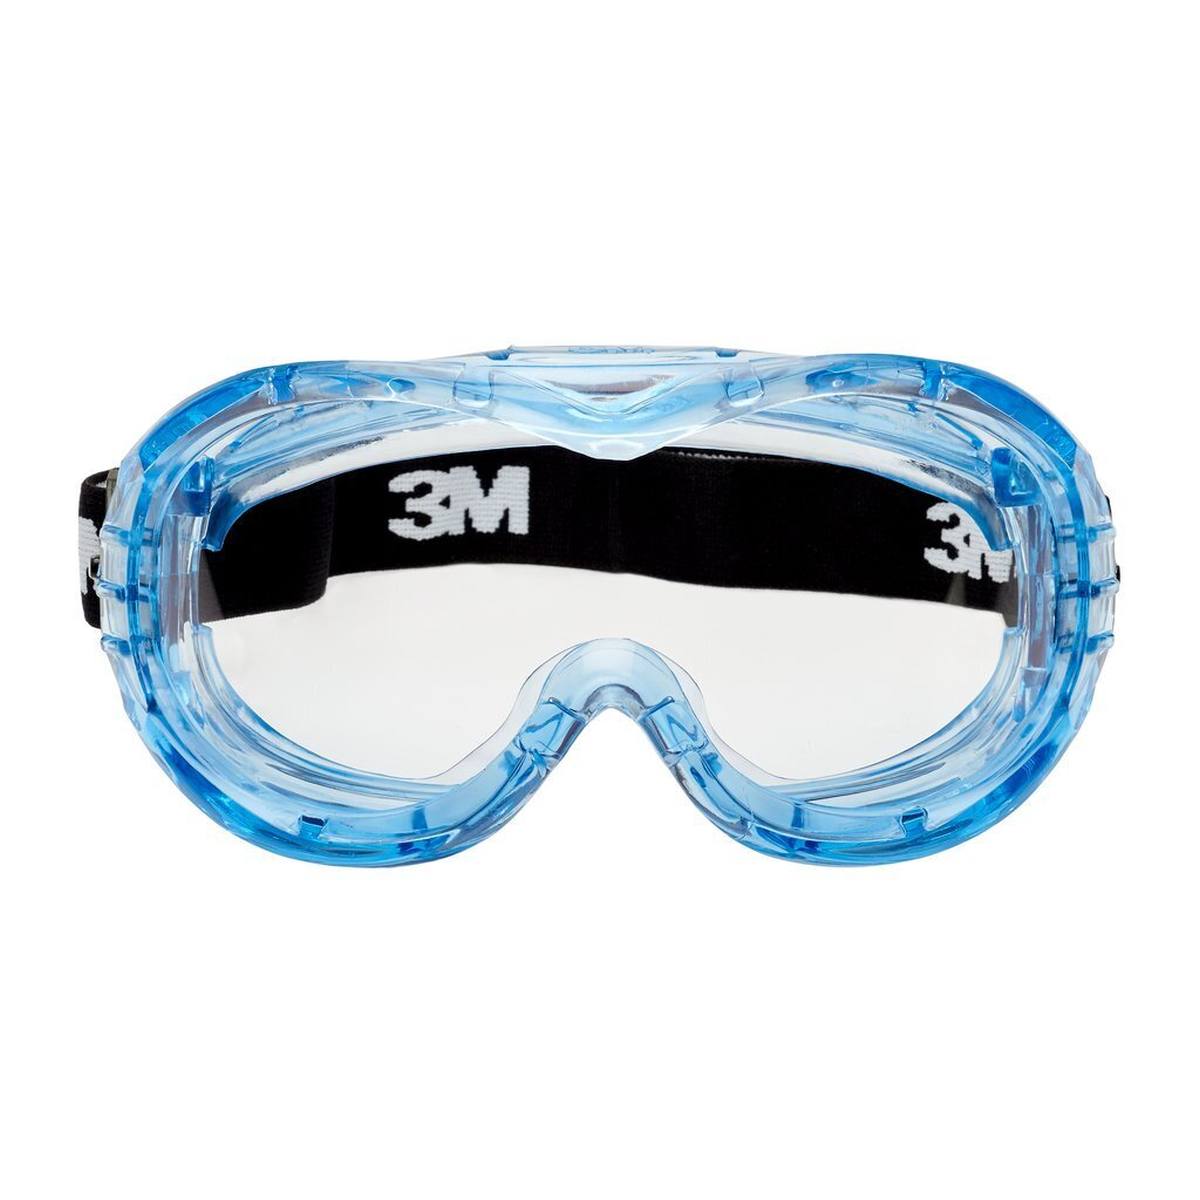 3M Gafas de protección Fahrenheit AS/AF/UV, PC, transparentes, revestimiento de Hardium, ventilación indirecta, cinta de nylon, incl. bolsa de microfibra Fheit